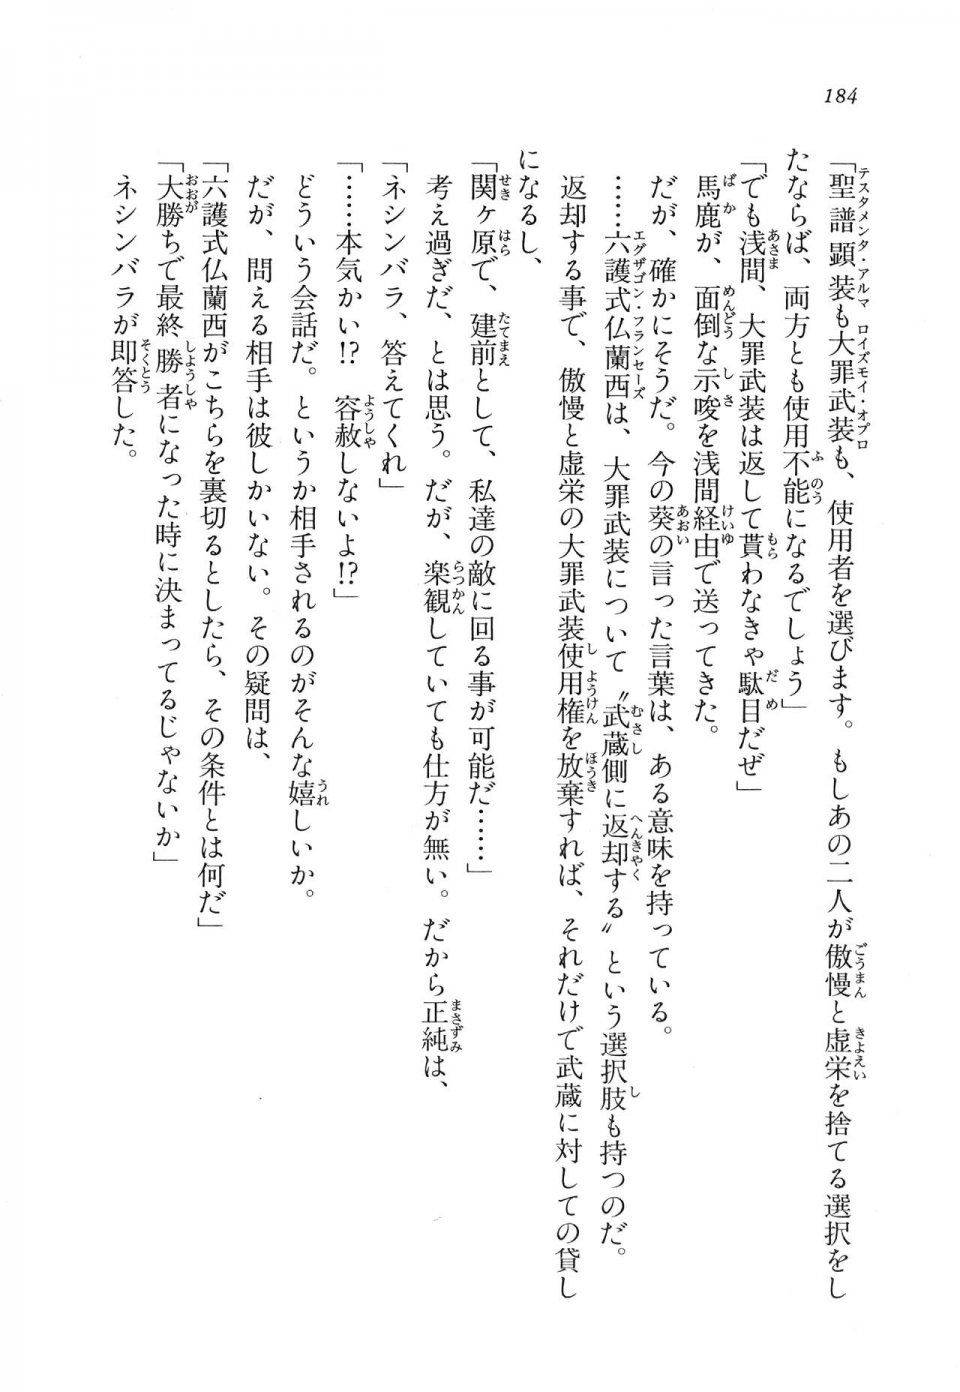 Kyoukai Senjou no Horizon LN Vol 11(5A) - Photo #184